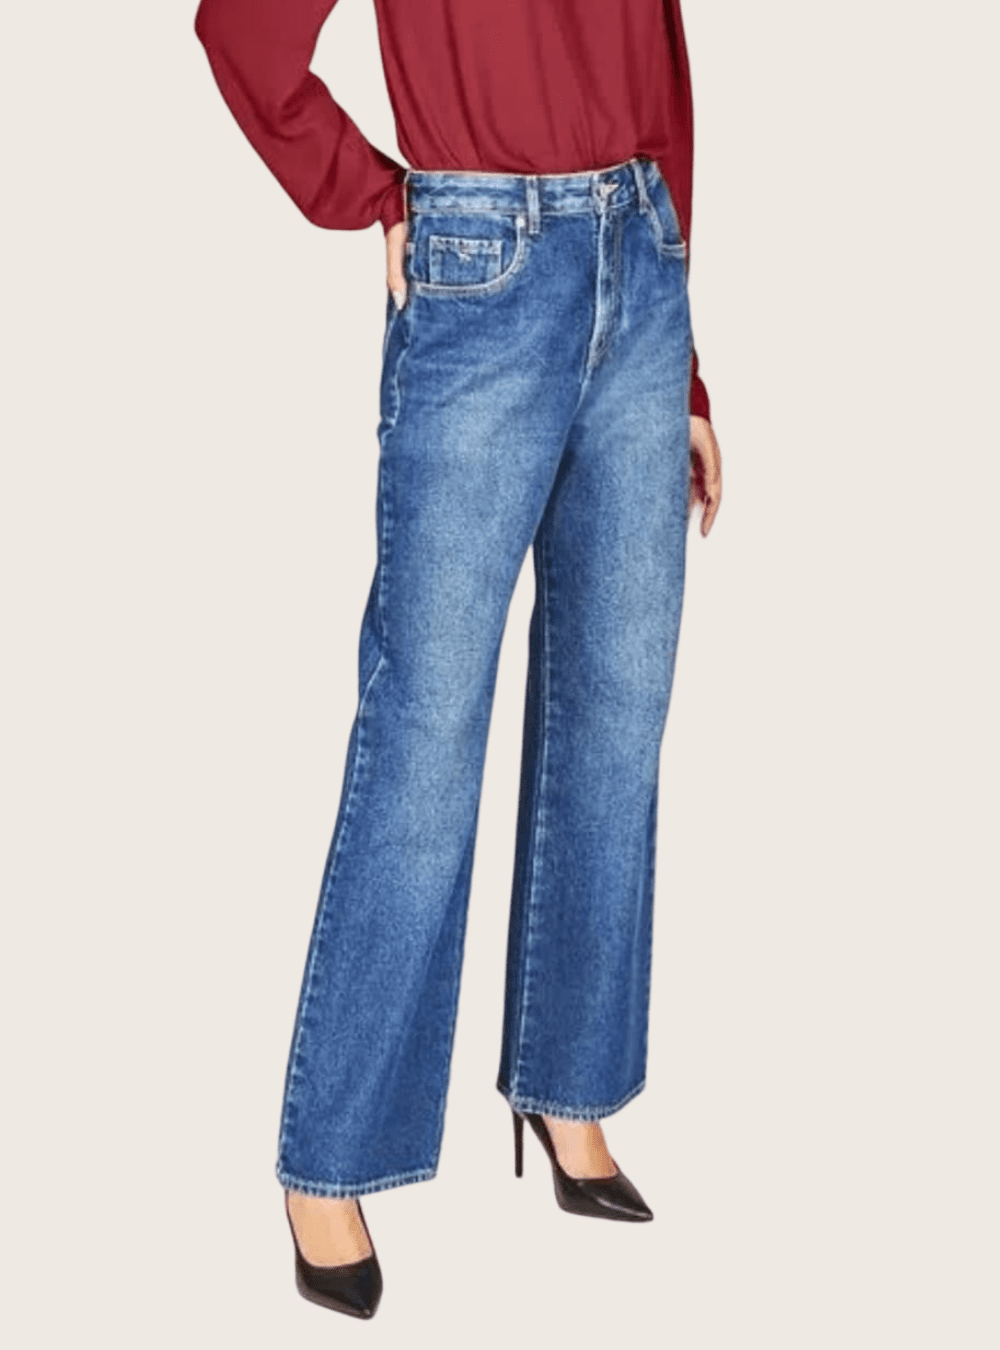 Calça Reta Moderna Feminina Jeans com Bolsos e Fechamento Simples